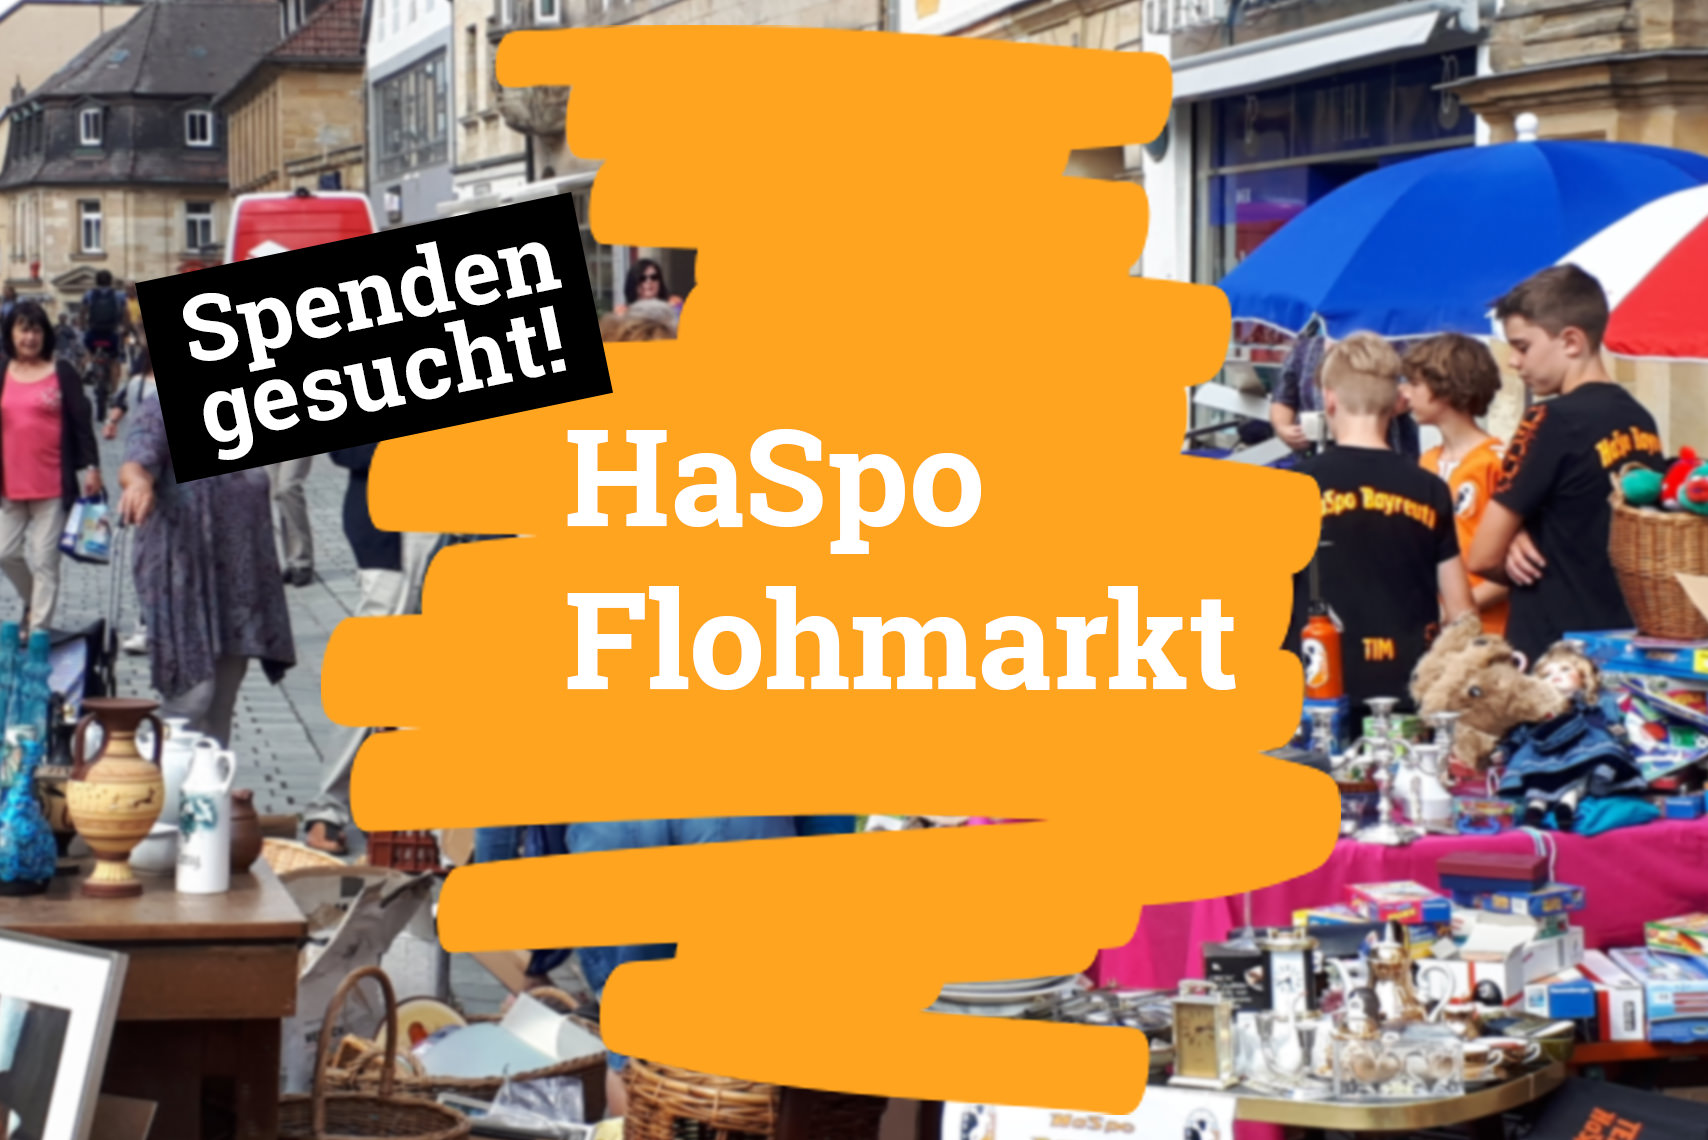 HaSpo Flohmarkt am 03. Juni 23- Spenden gesucht!